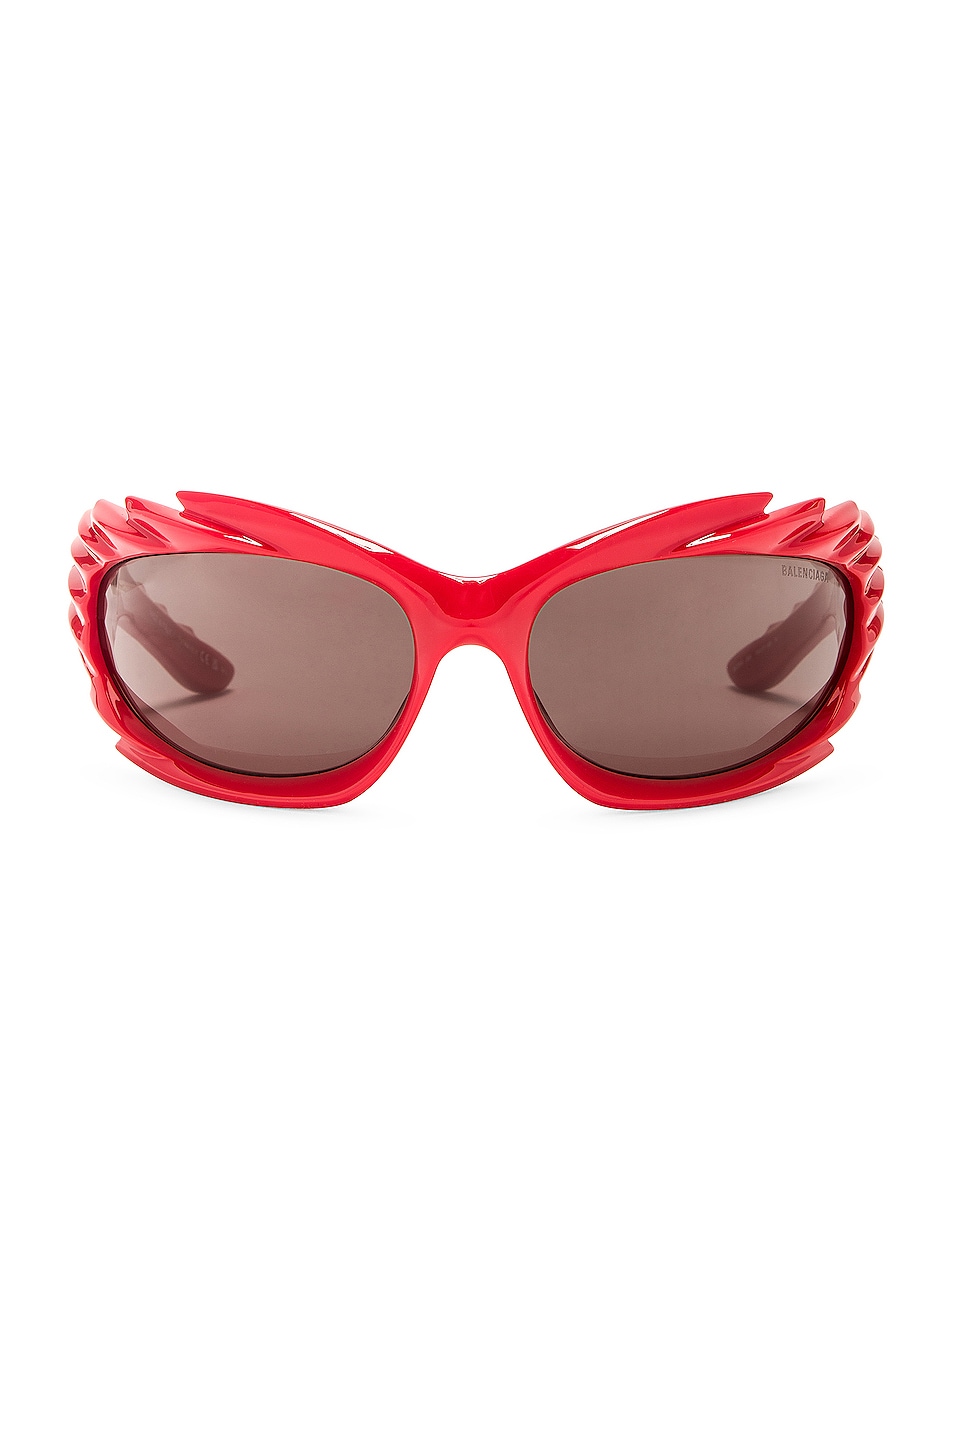 Spike Geometrical Sunglasses in Red